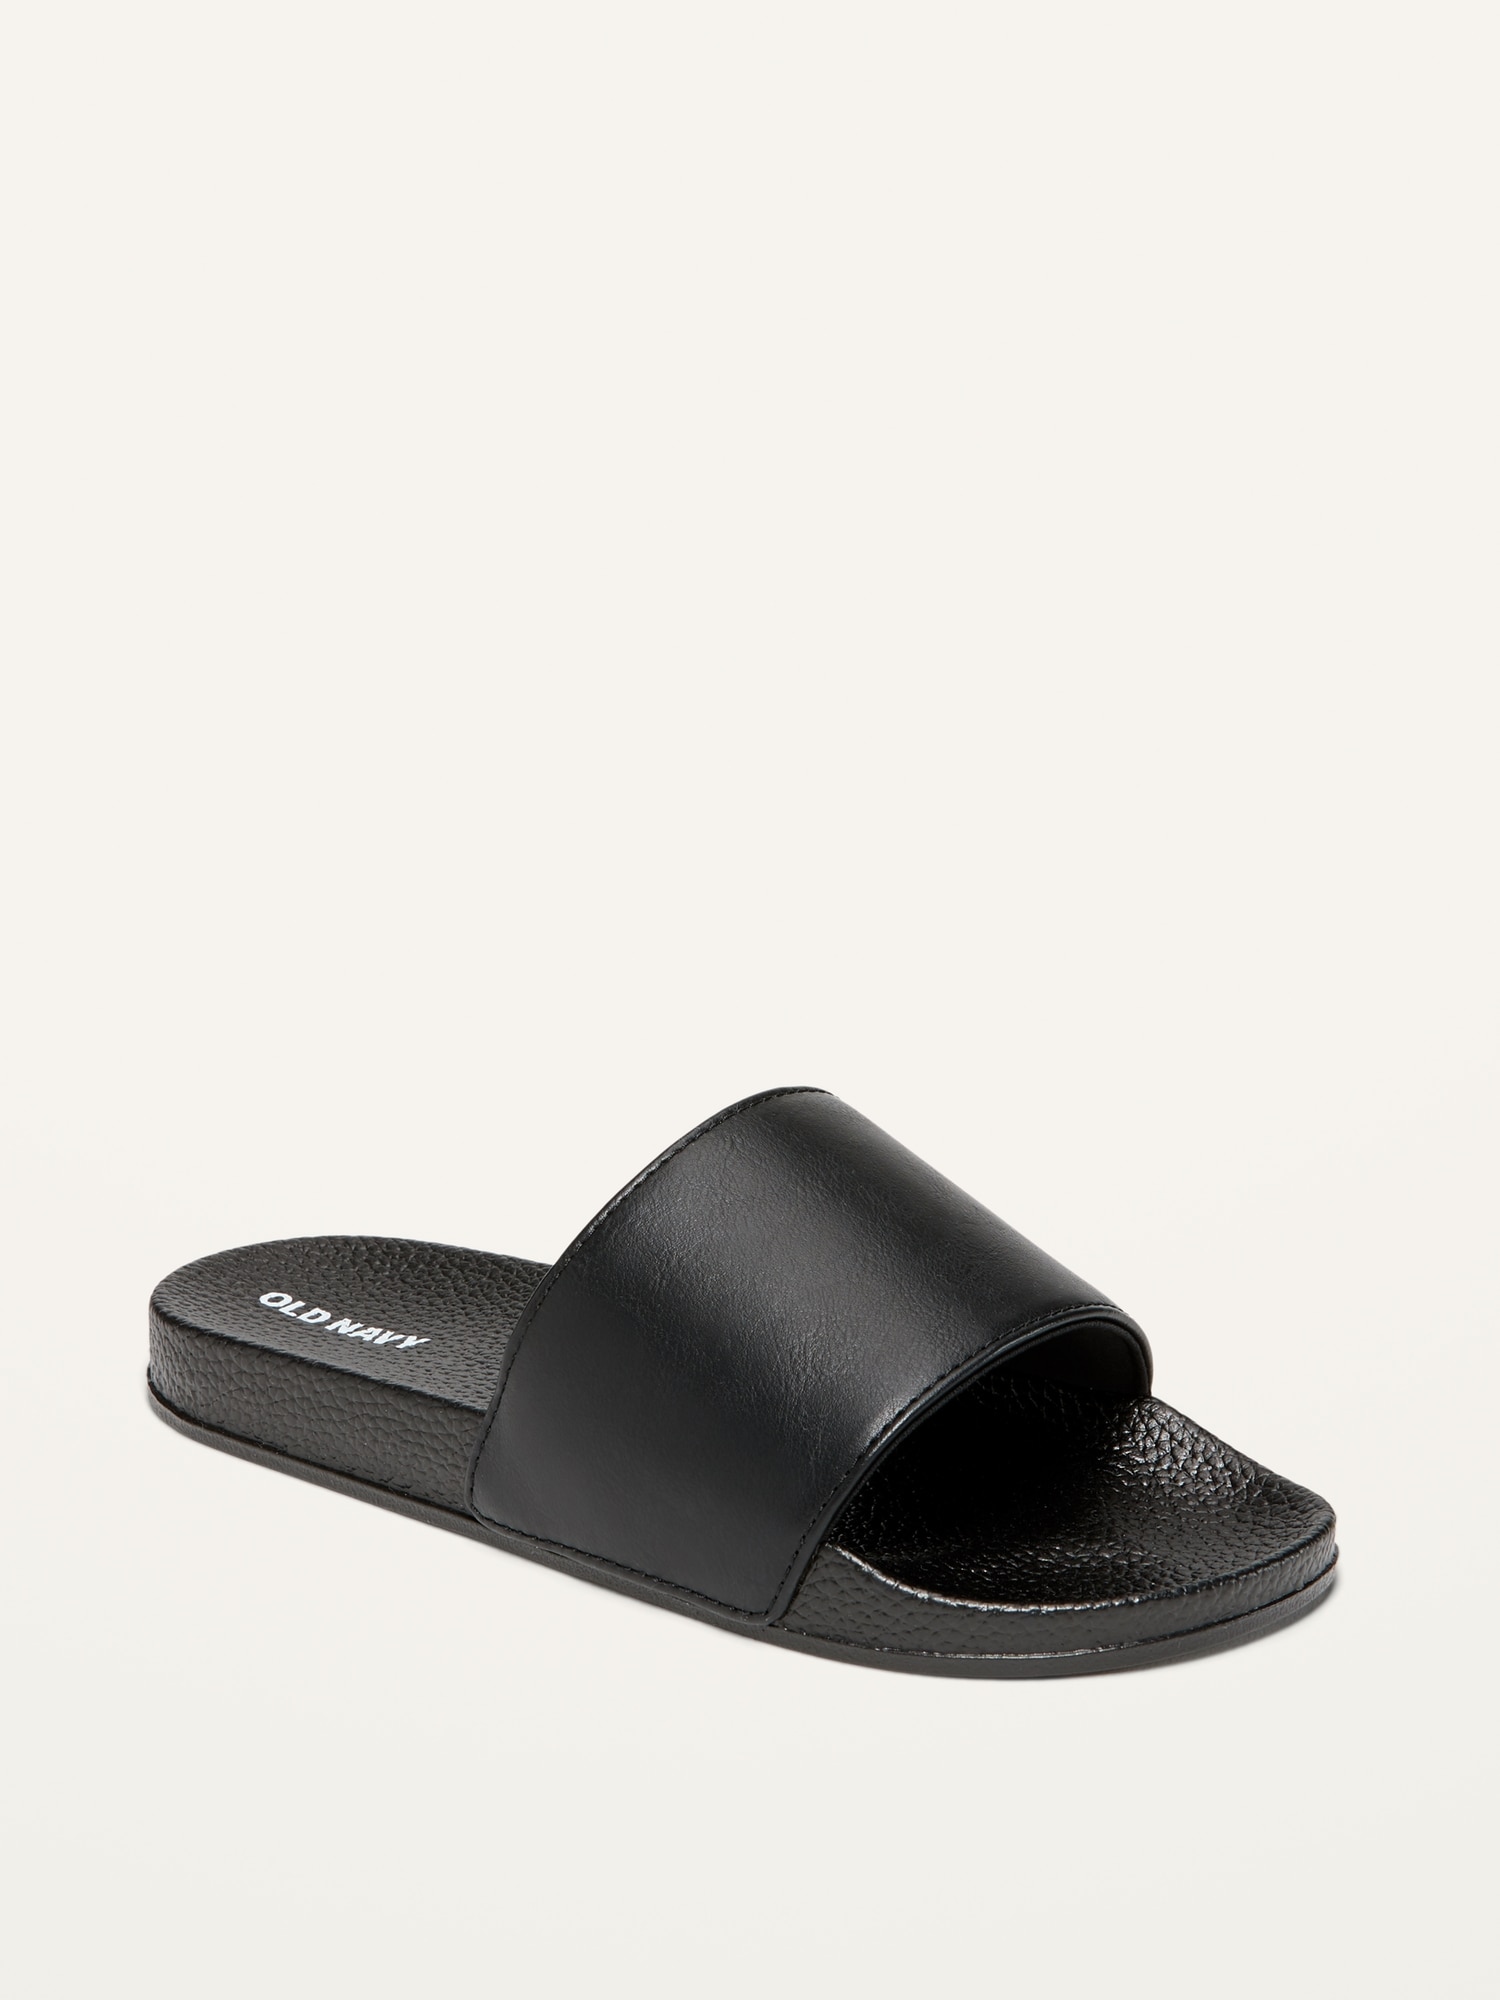 Gender-Neutral Faux-Leather Slide Sandals For Kids | Old Navy